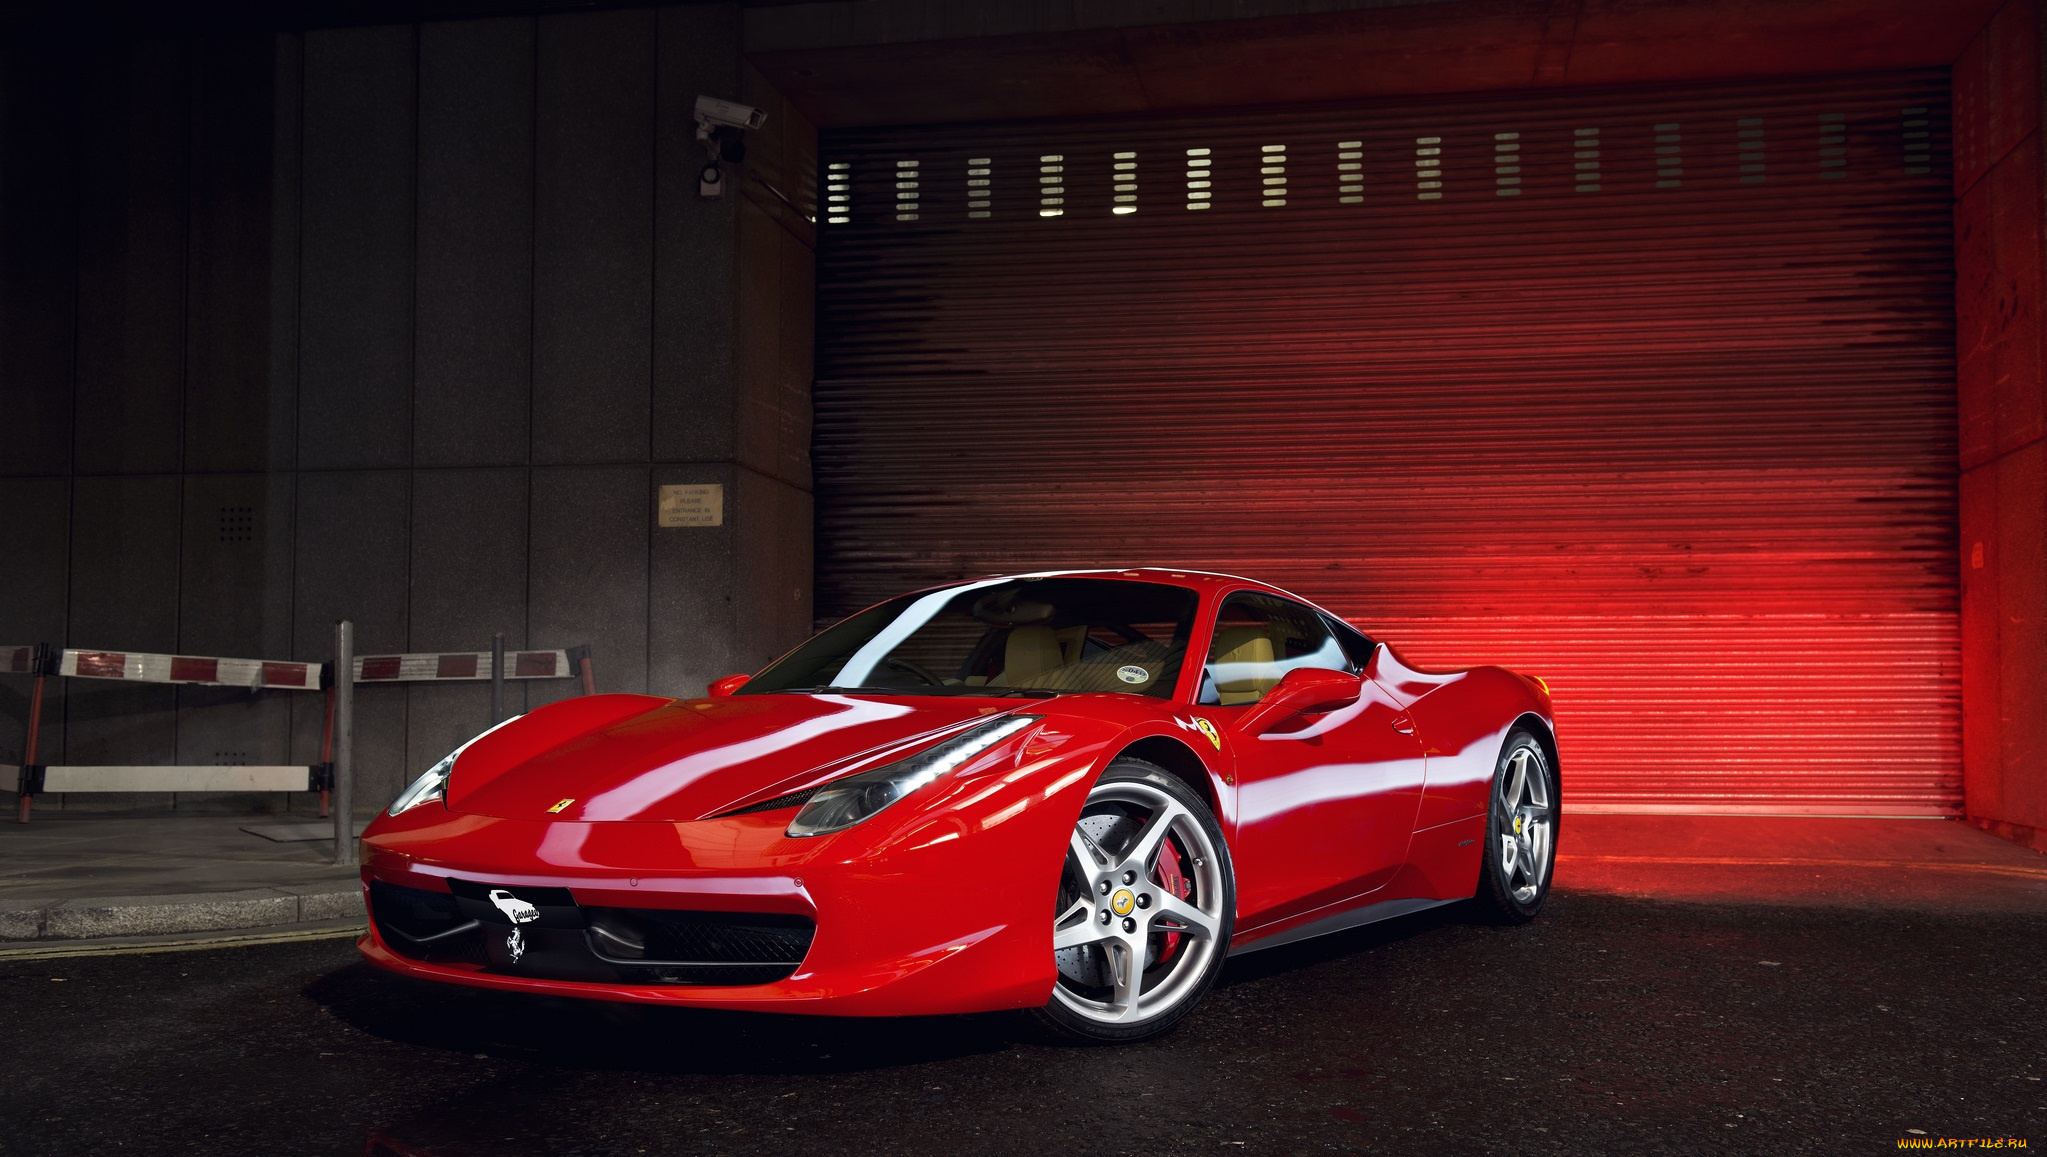 Ferrari feat. Ferrari 458 Italia красная. Феррари 458 Italia. Красный Ferrari 458 Italia[1].